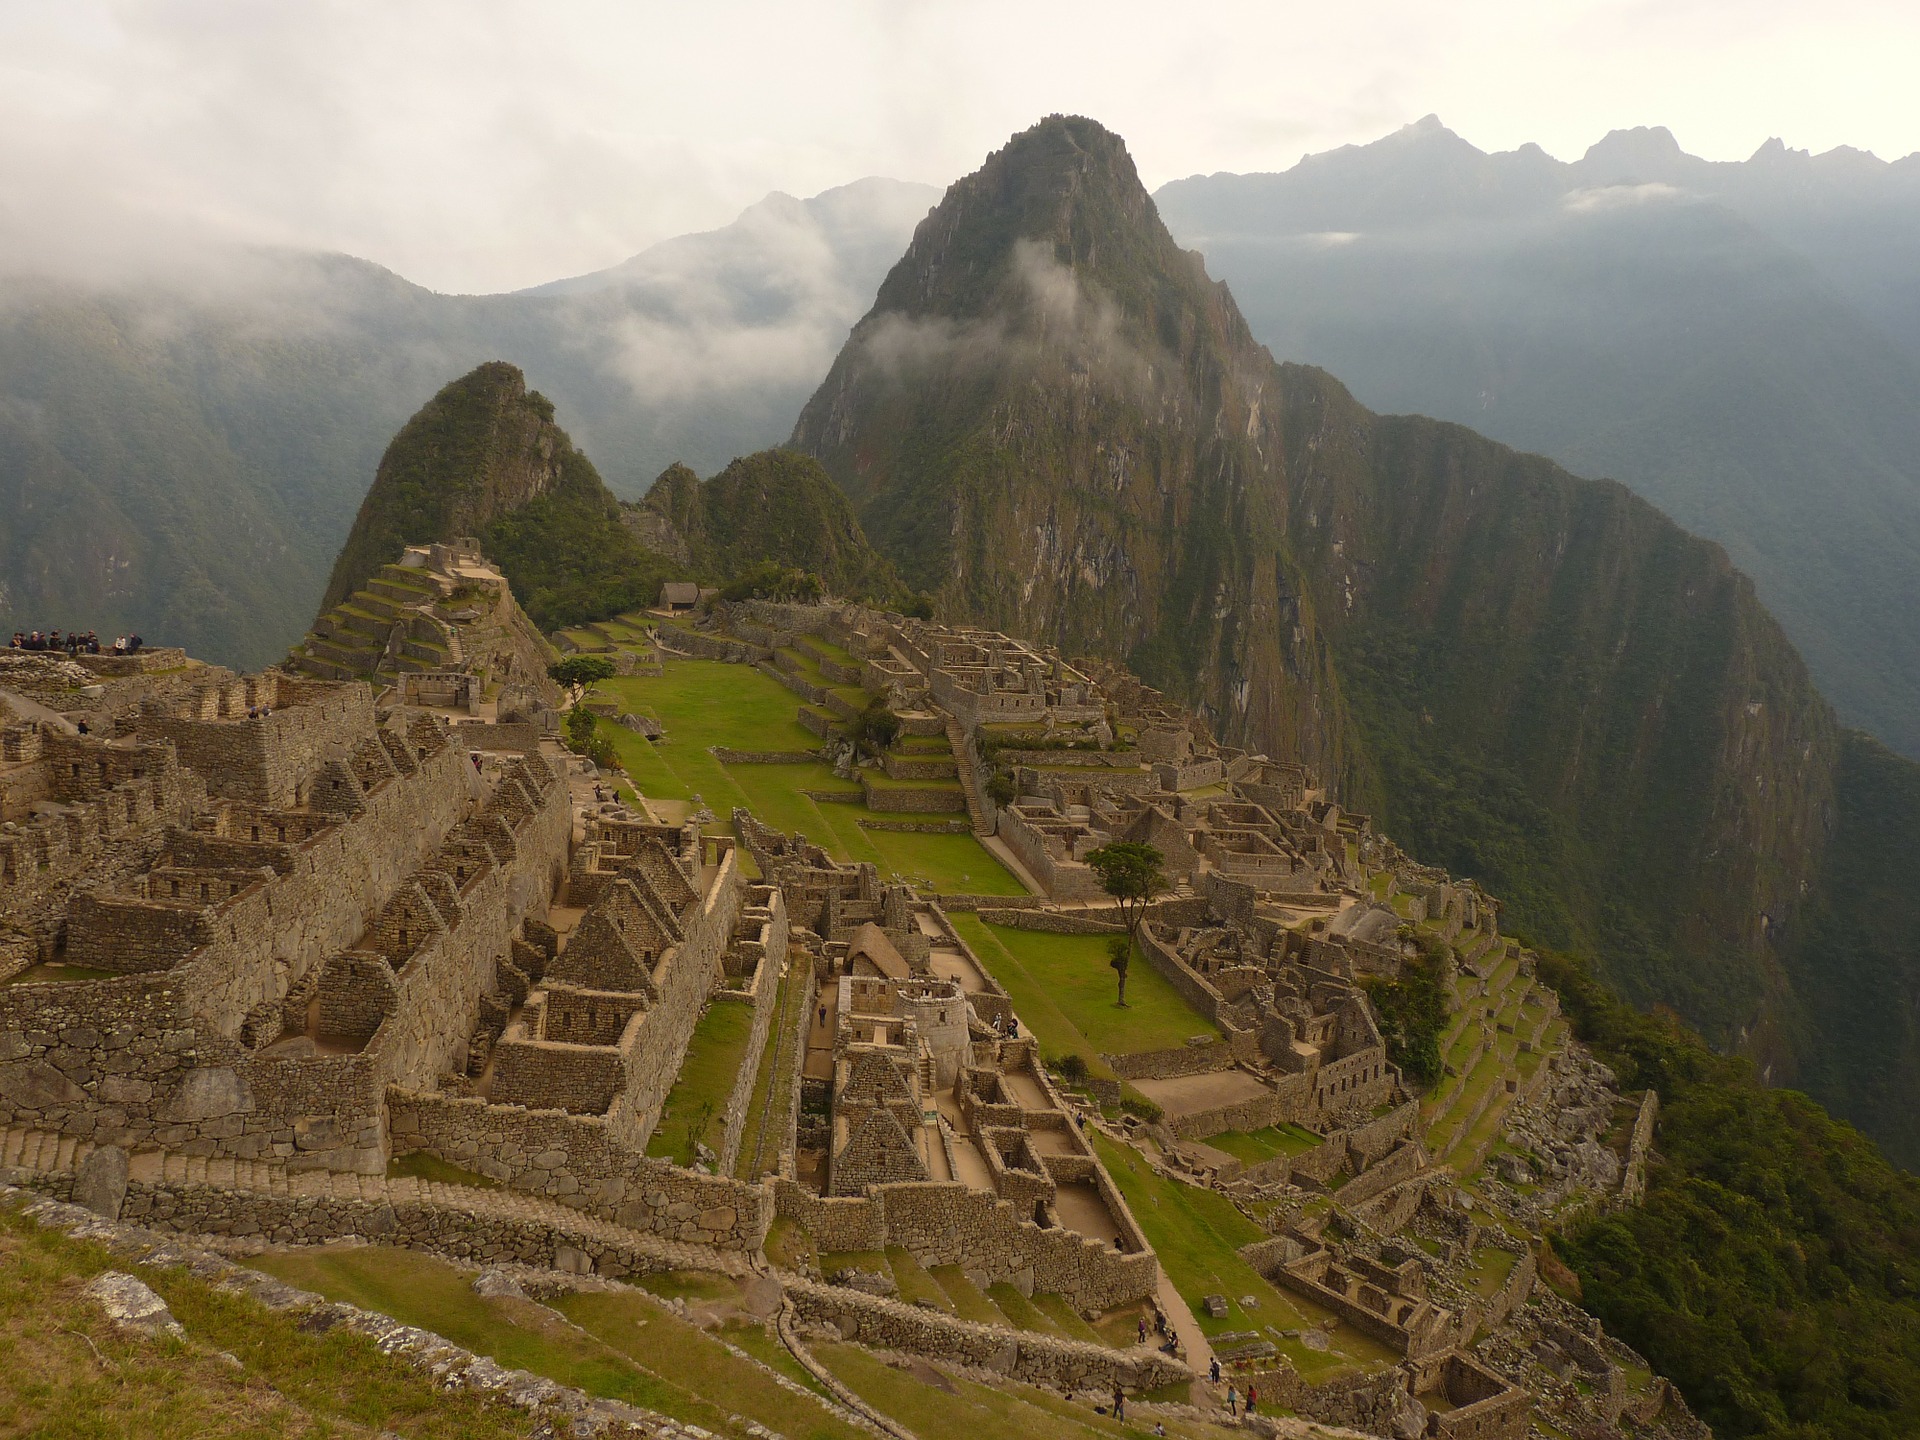 Machu Picchu - images by LoggaWiggler @ pixabay.com